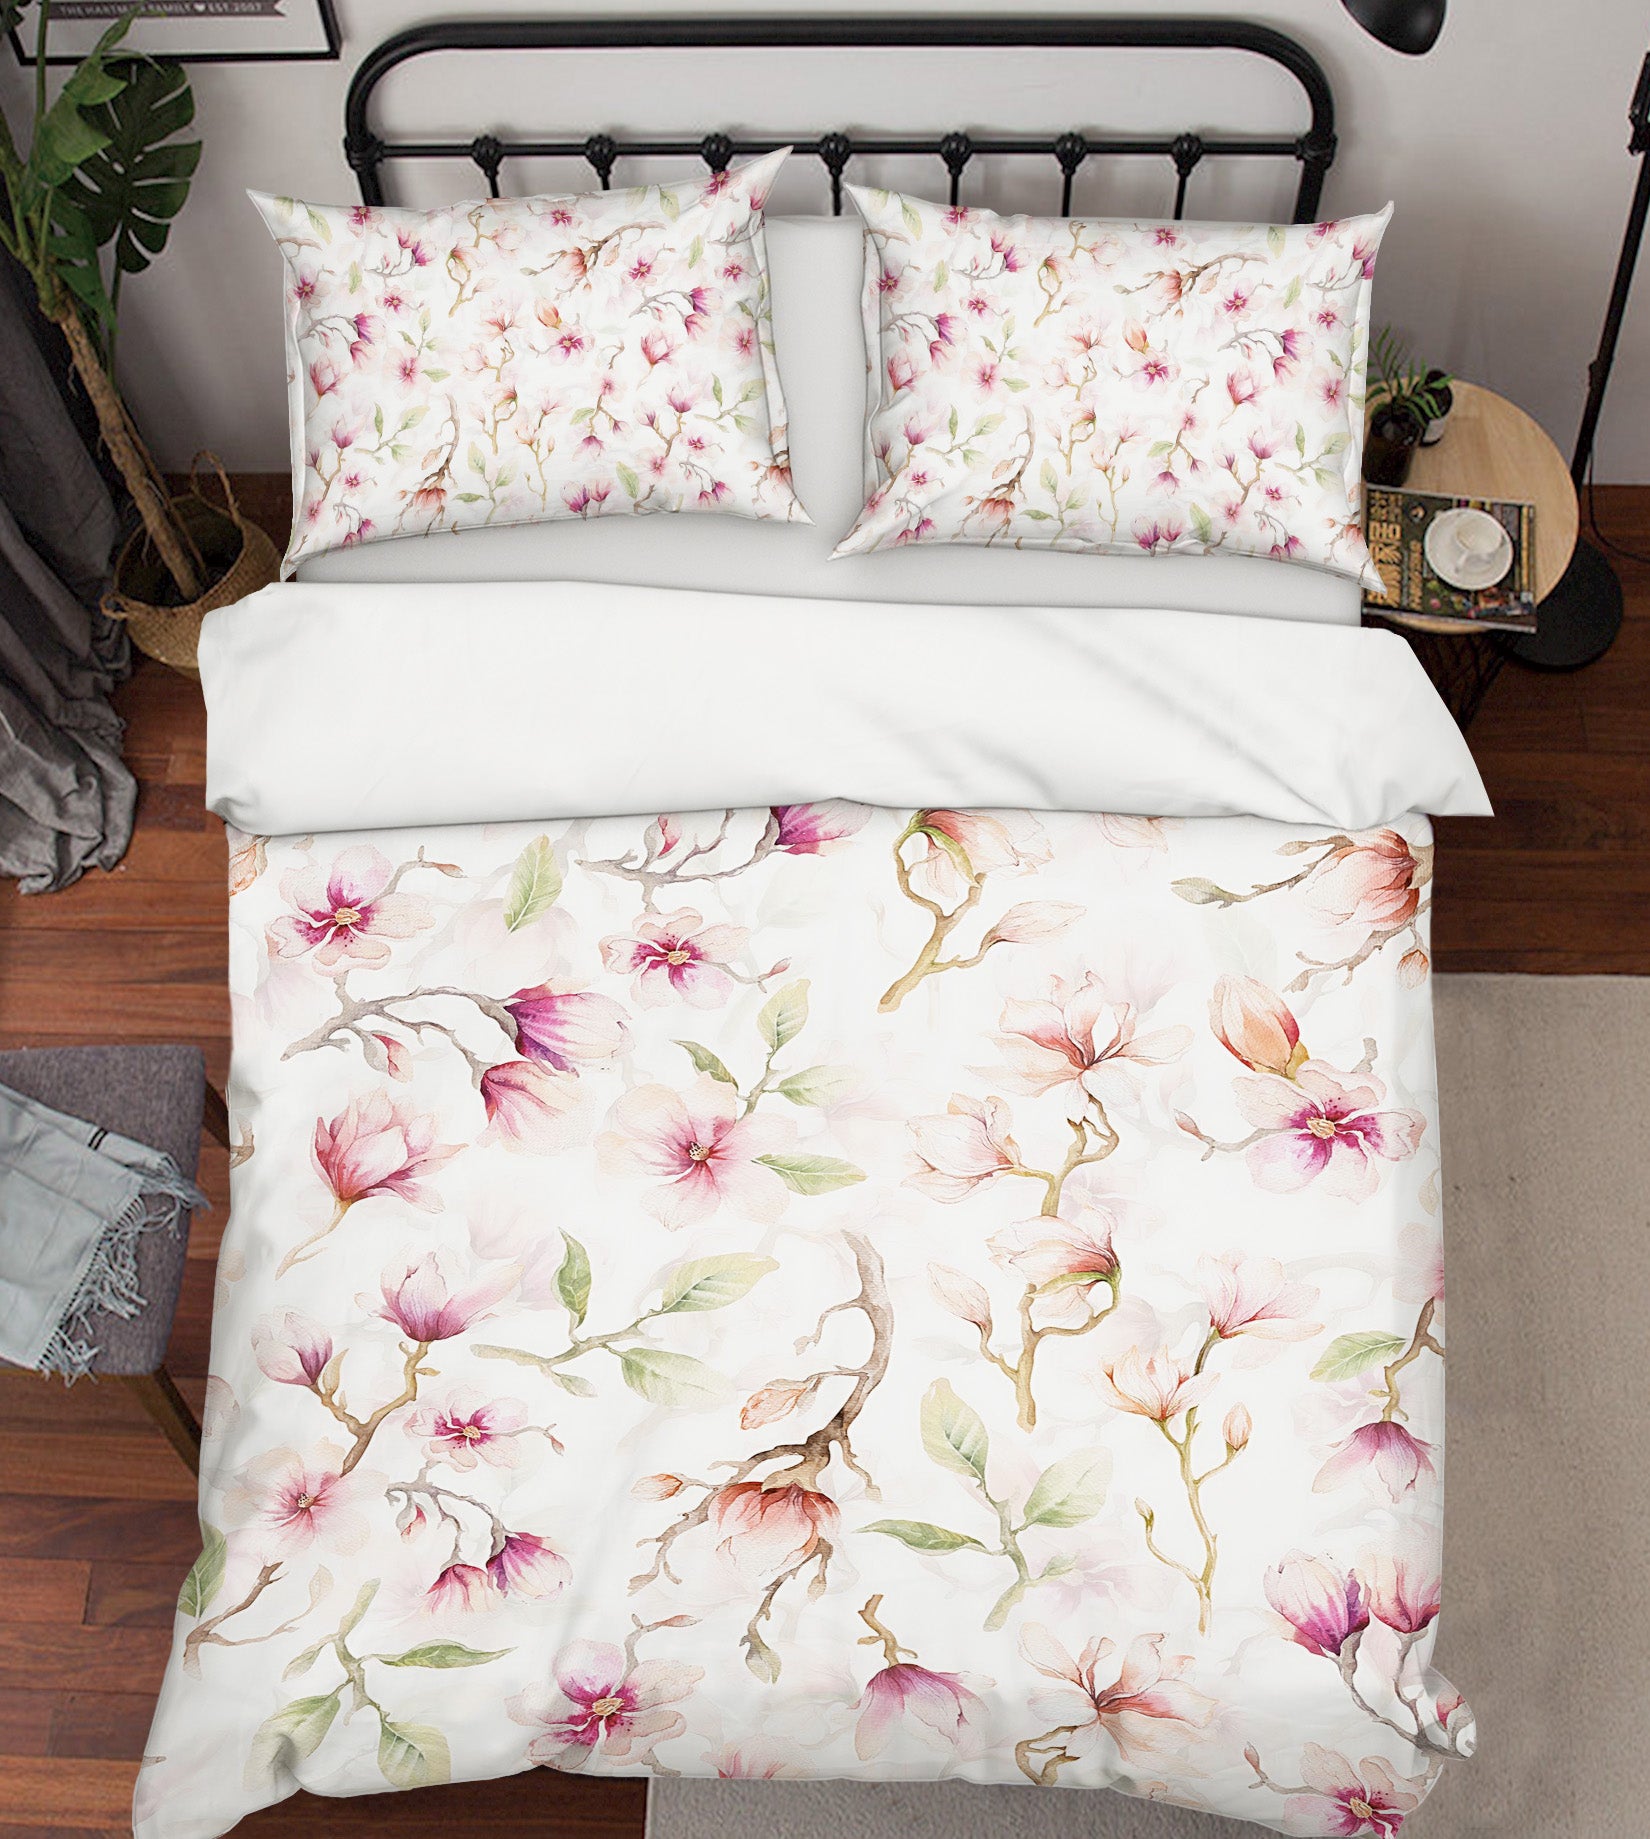 3D Flower 18196 Uta Naumann Bedding Bed Pillowcases Quilt